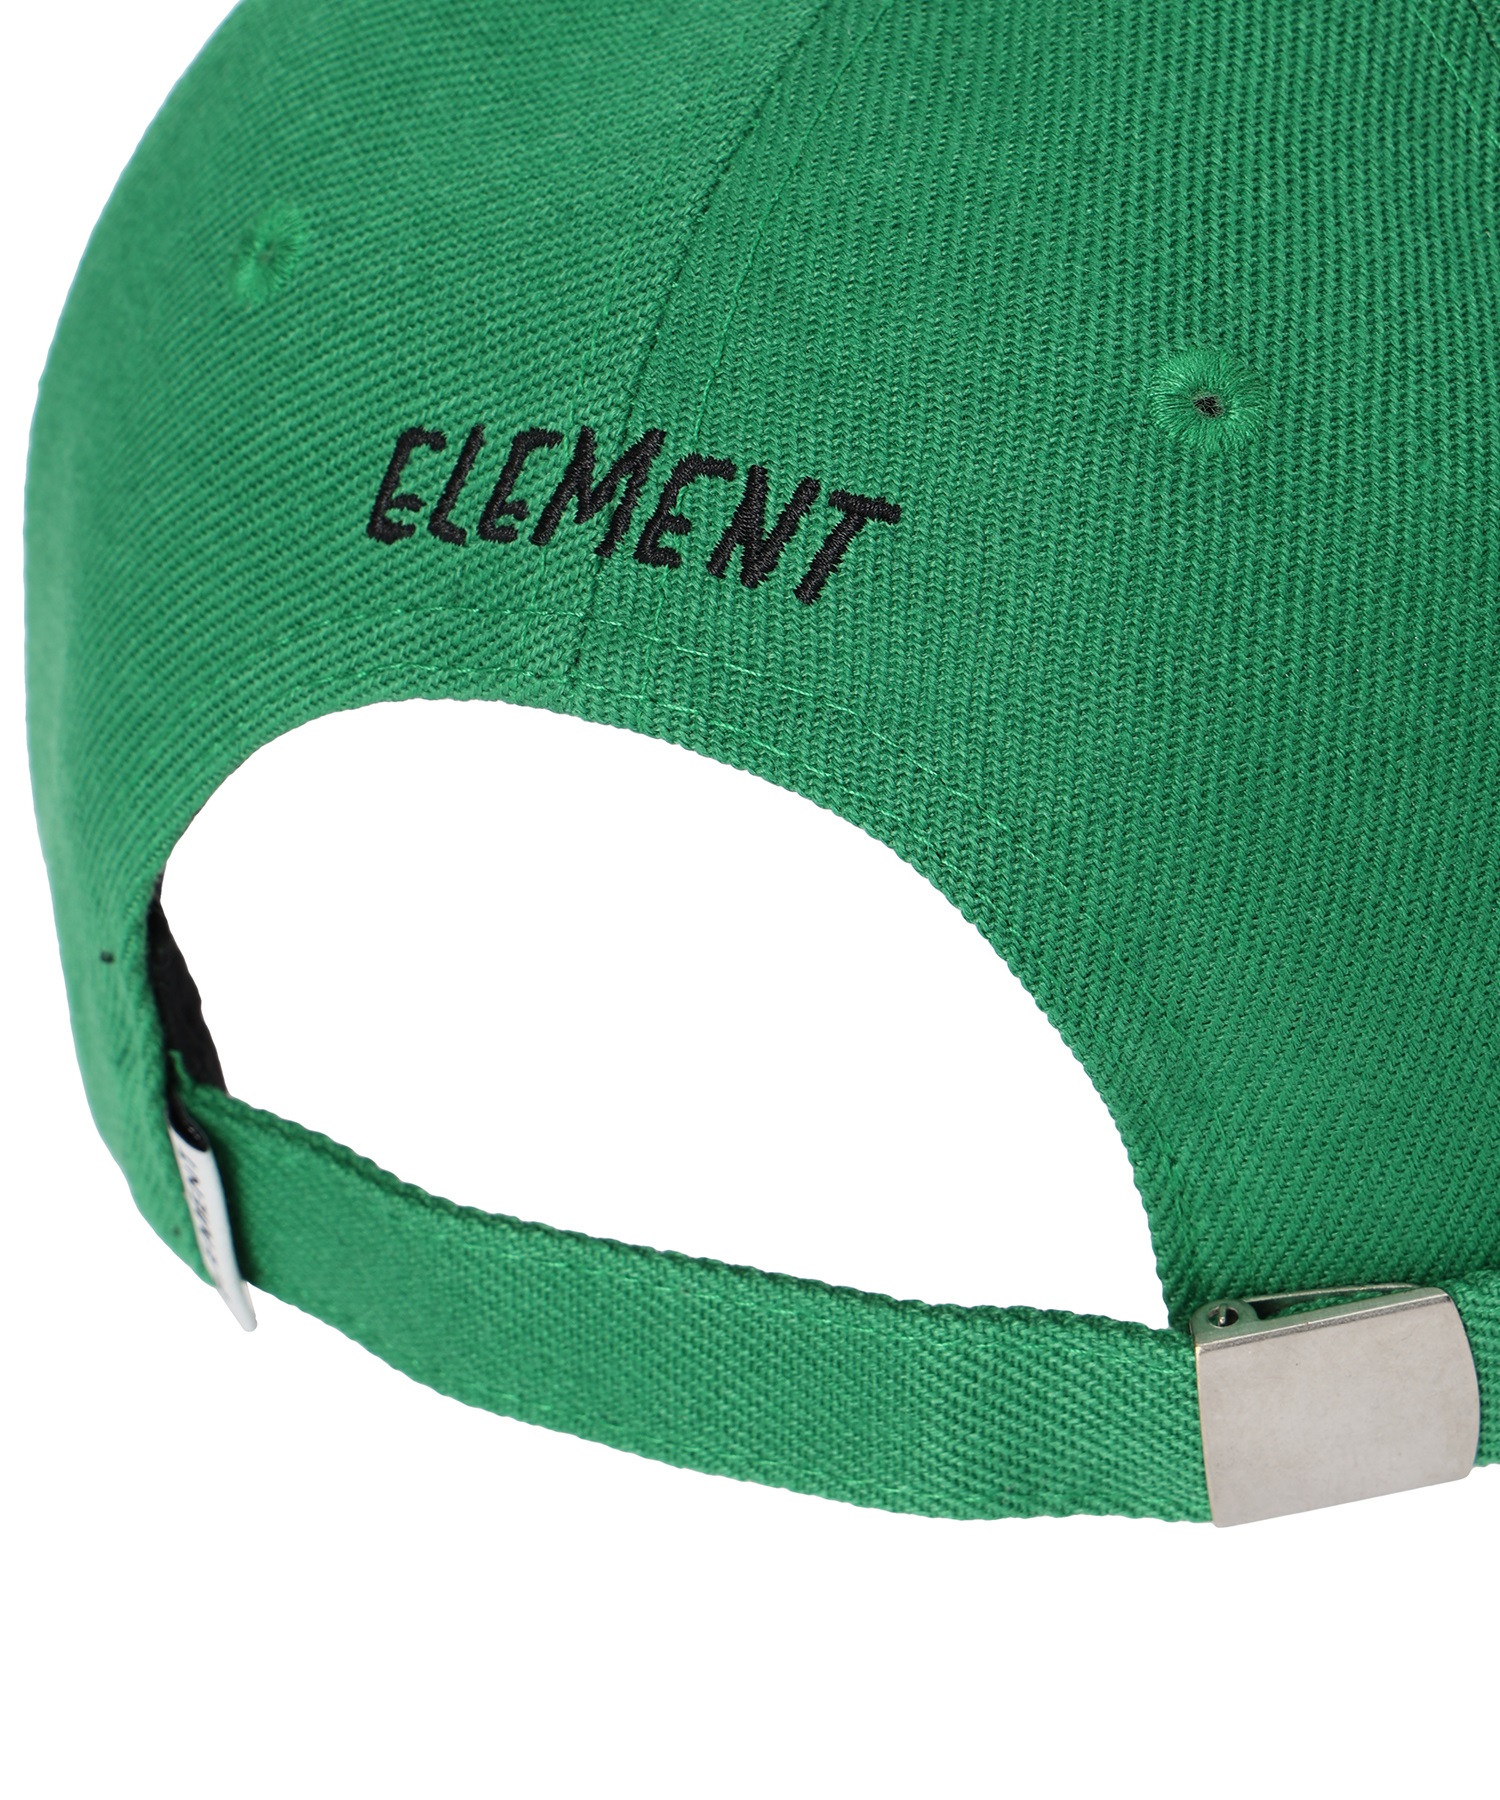 ELEMENT エレメント CAP  BD026-955 キッズ キャップ(GRN-F)